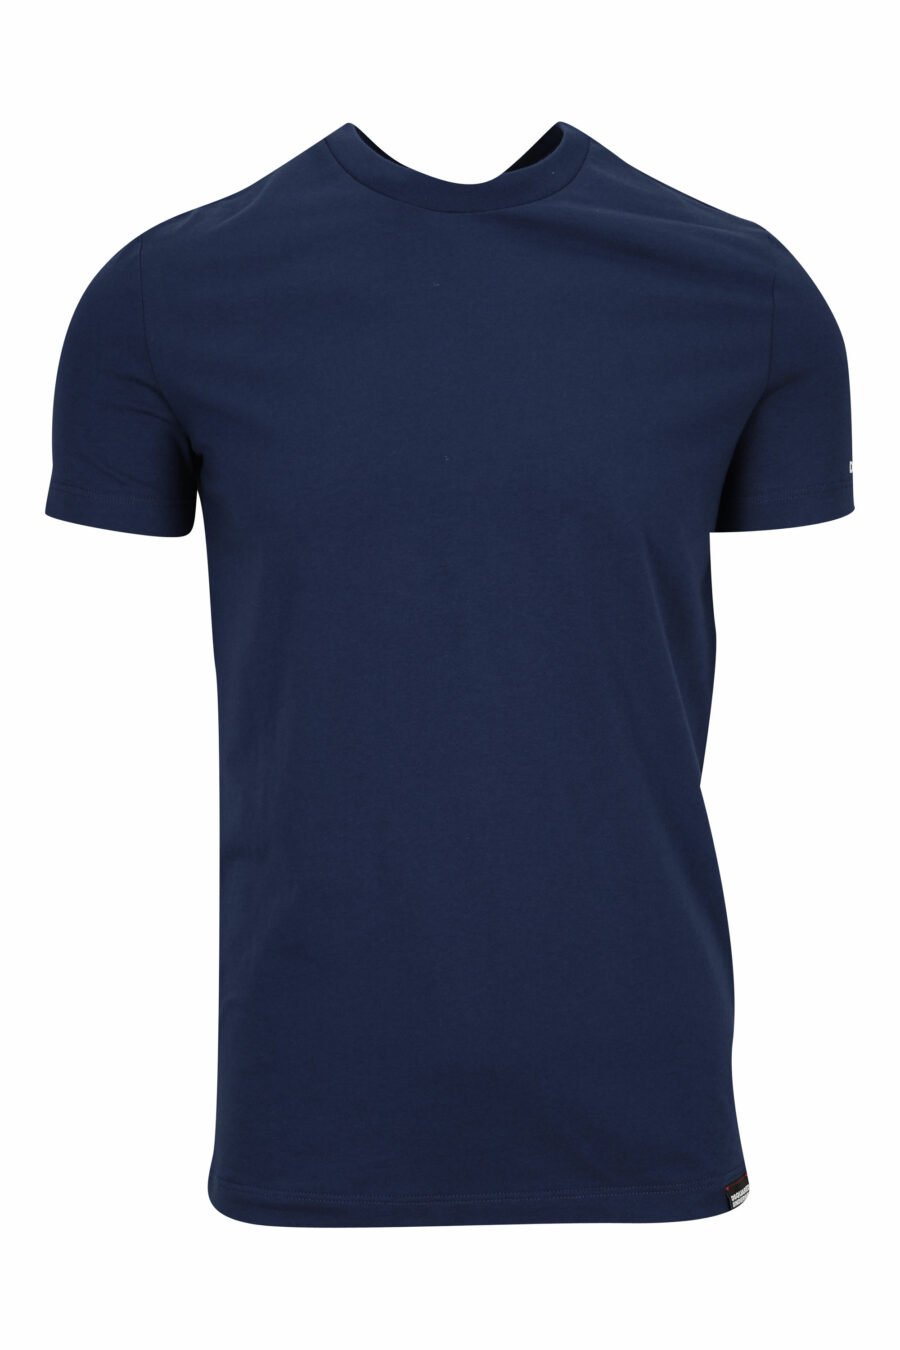 T-shirt azul escura com roupa interior branca minilogue - 8032674811684